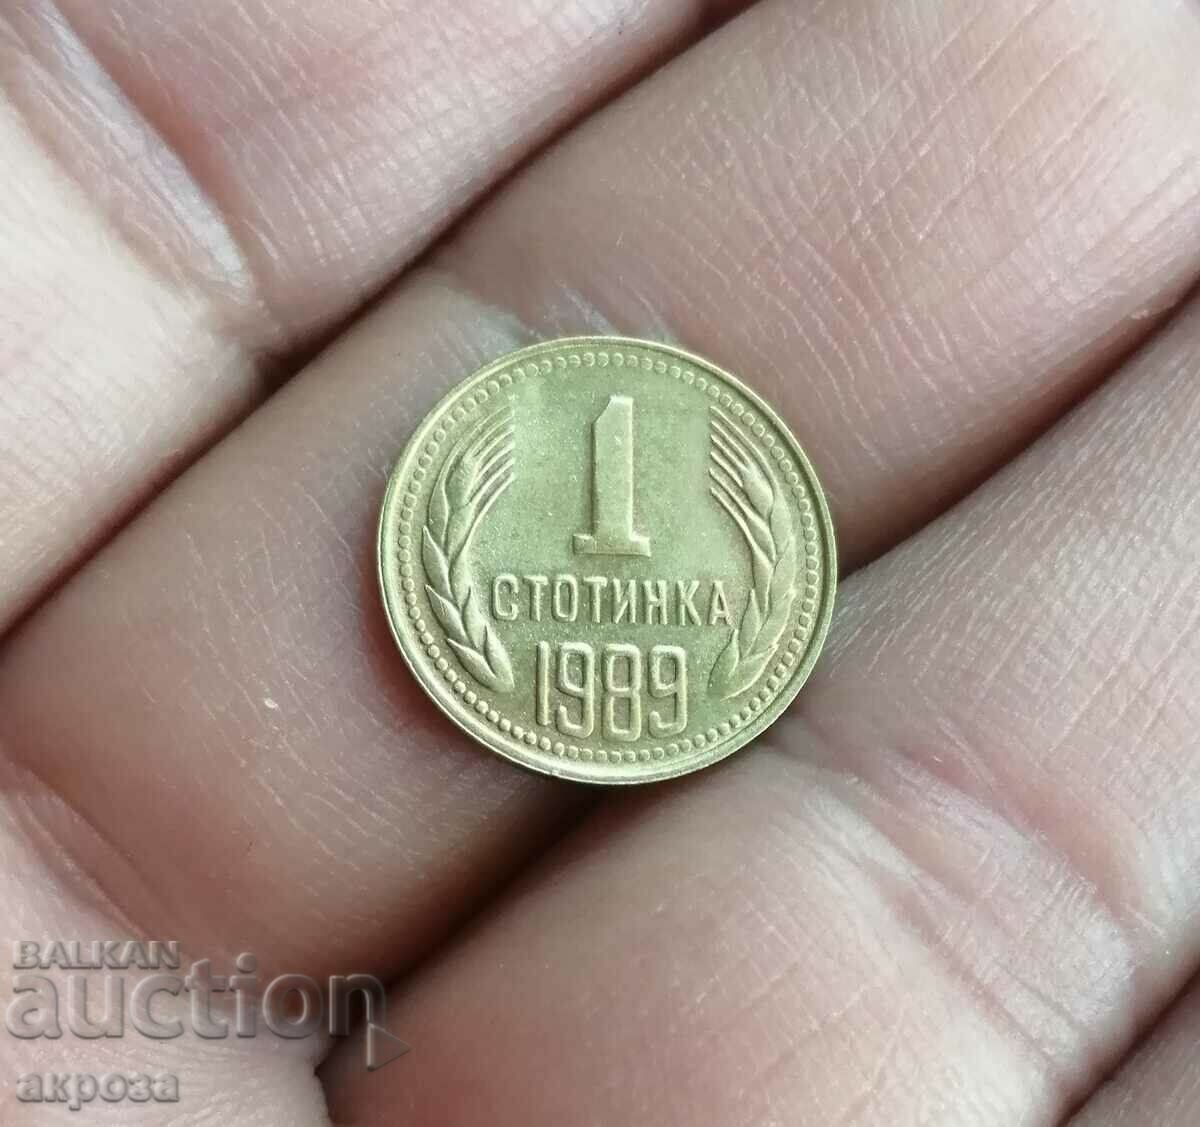 1 cent 1989 cu luciu